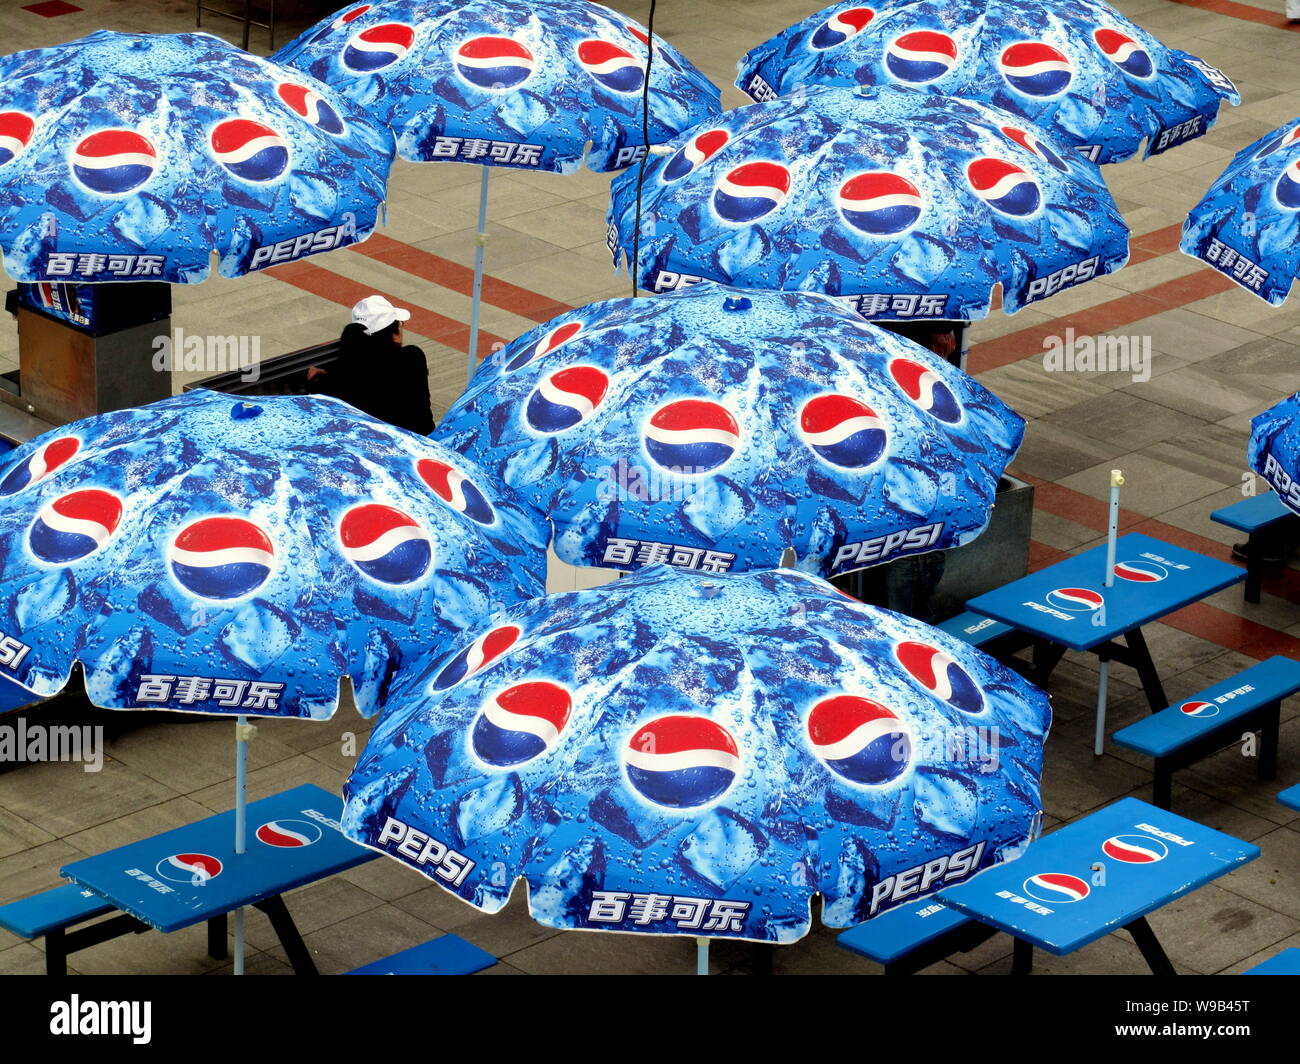 Trechter webspin ziekenhuis Politie Pepsi umbrellas hi-res stock photography and images - Alamy